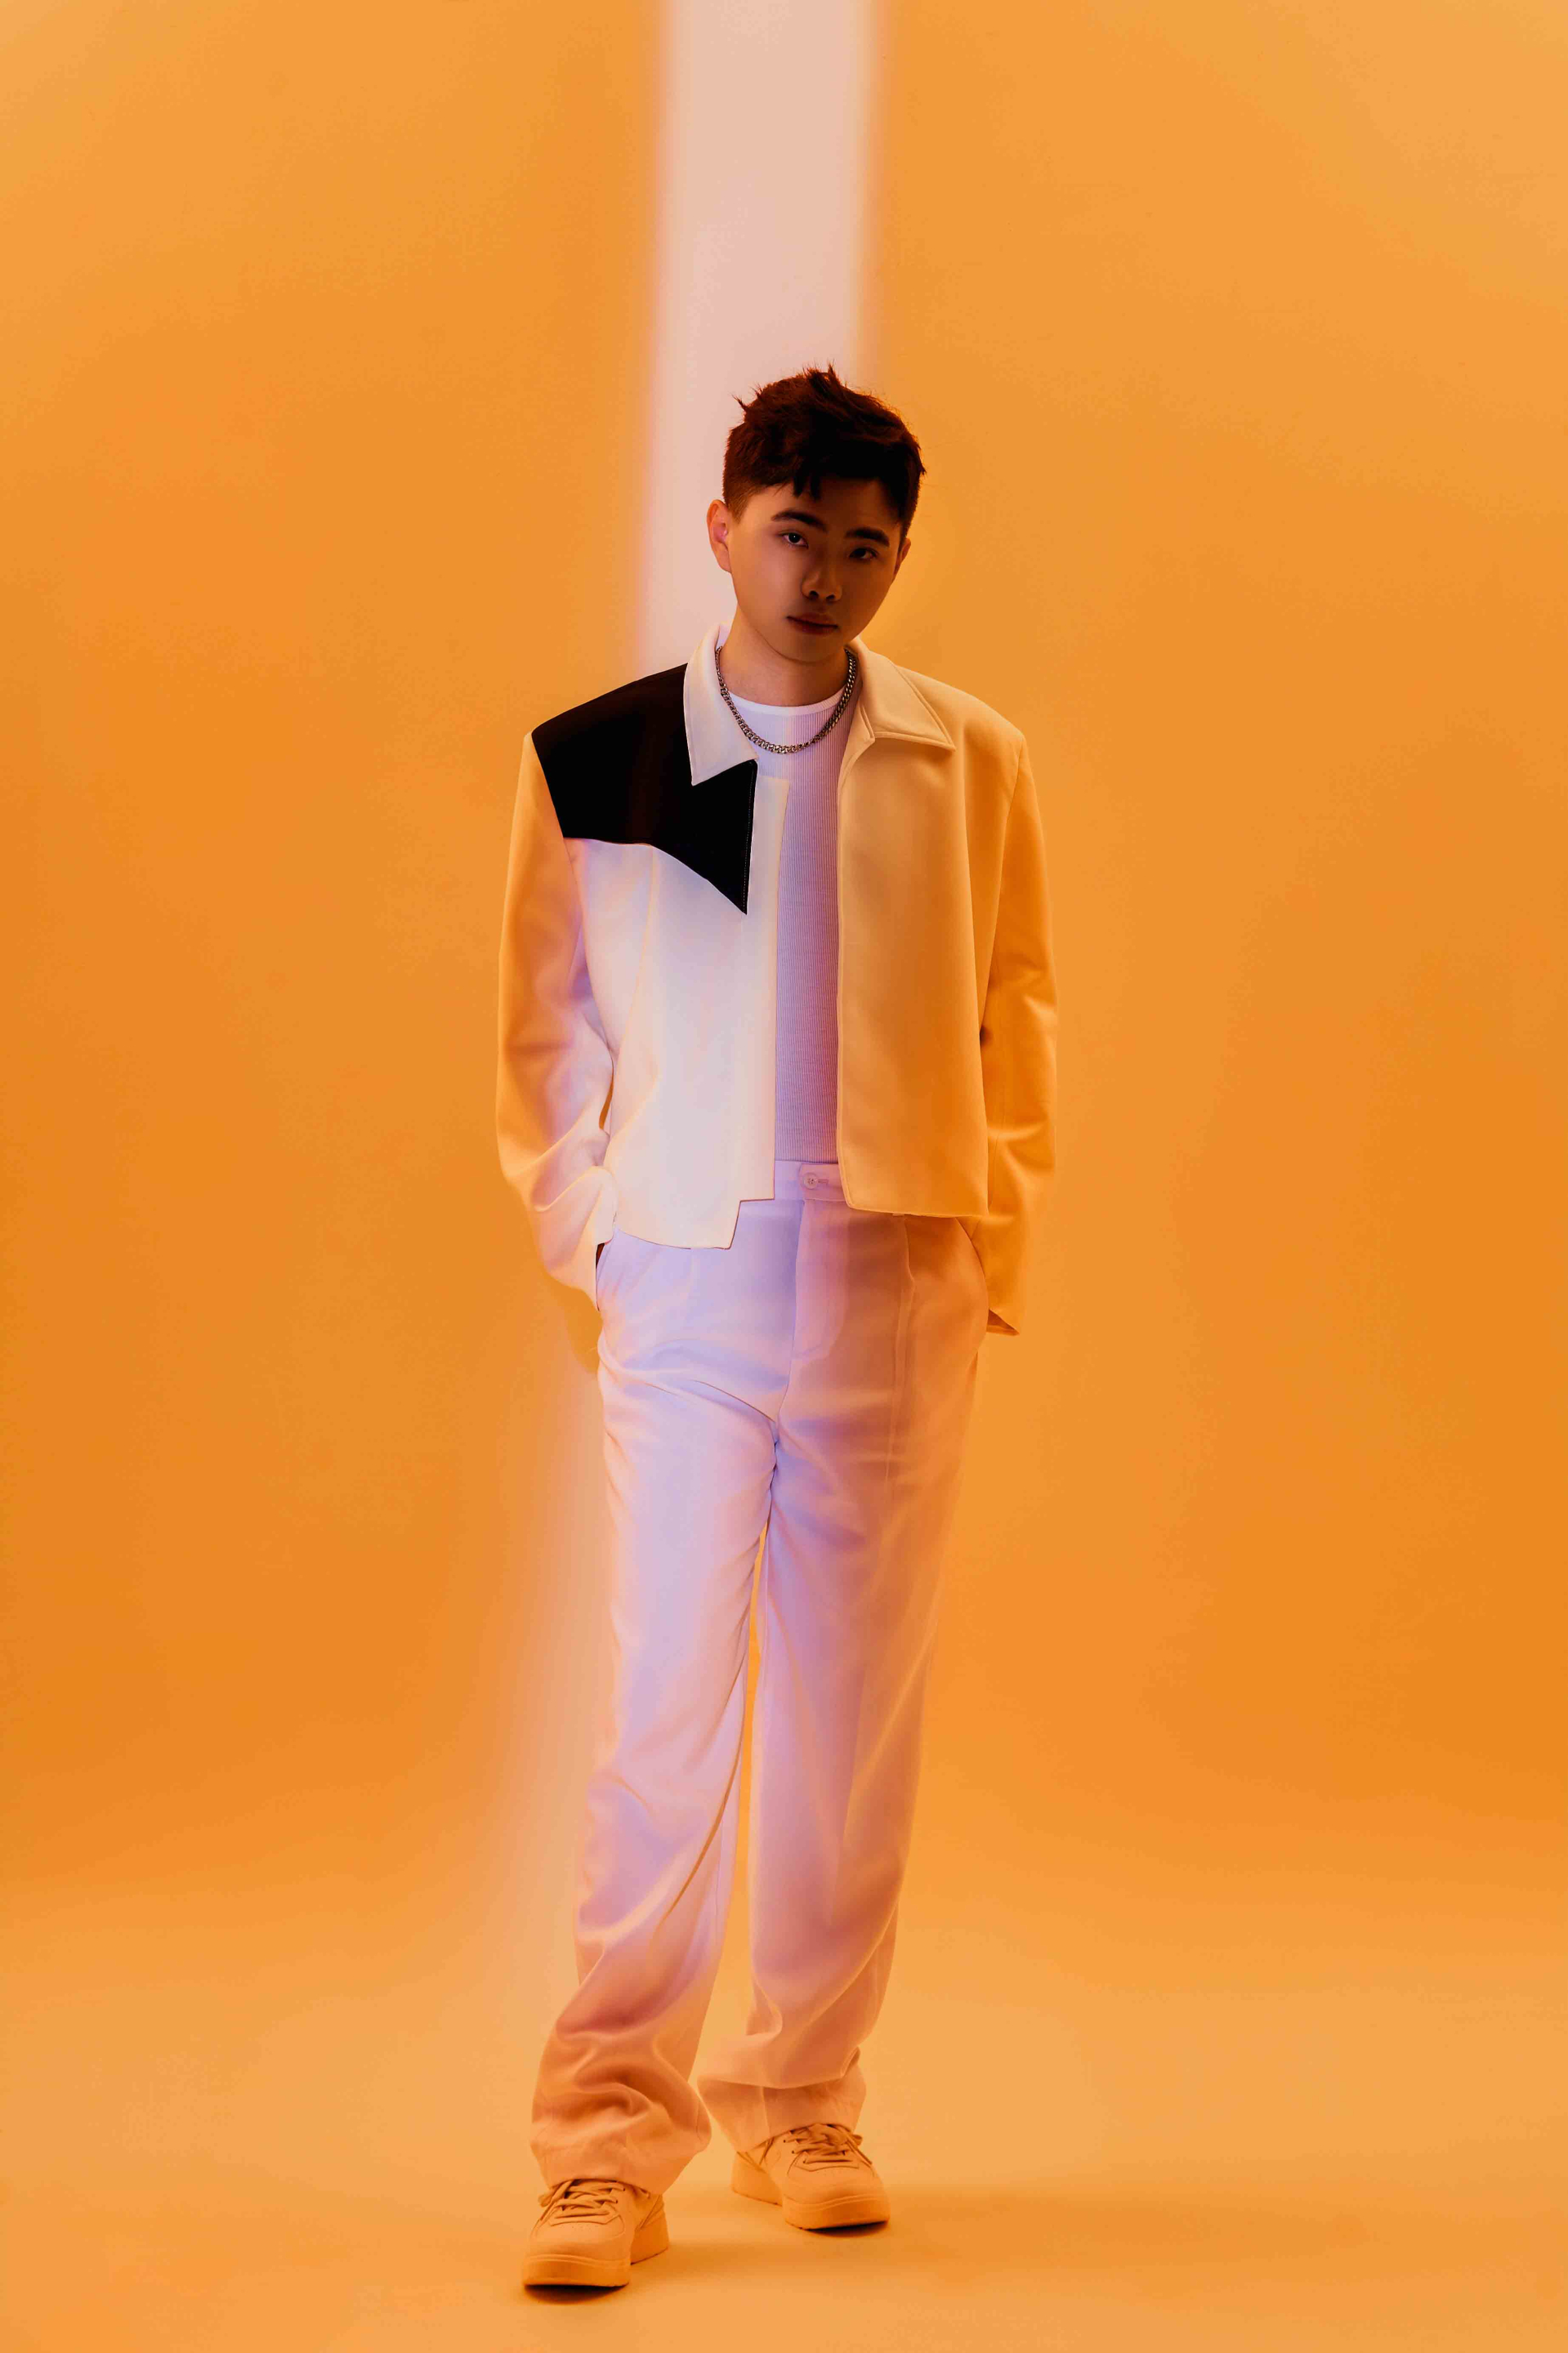 Ca sĩ Kiey tung MV đầu tiên trong album vol.3, hình ảnh đậm màu sắc “đam mỹ” - ảnh 1